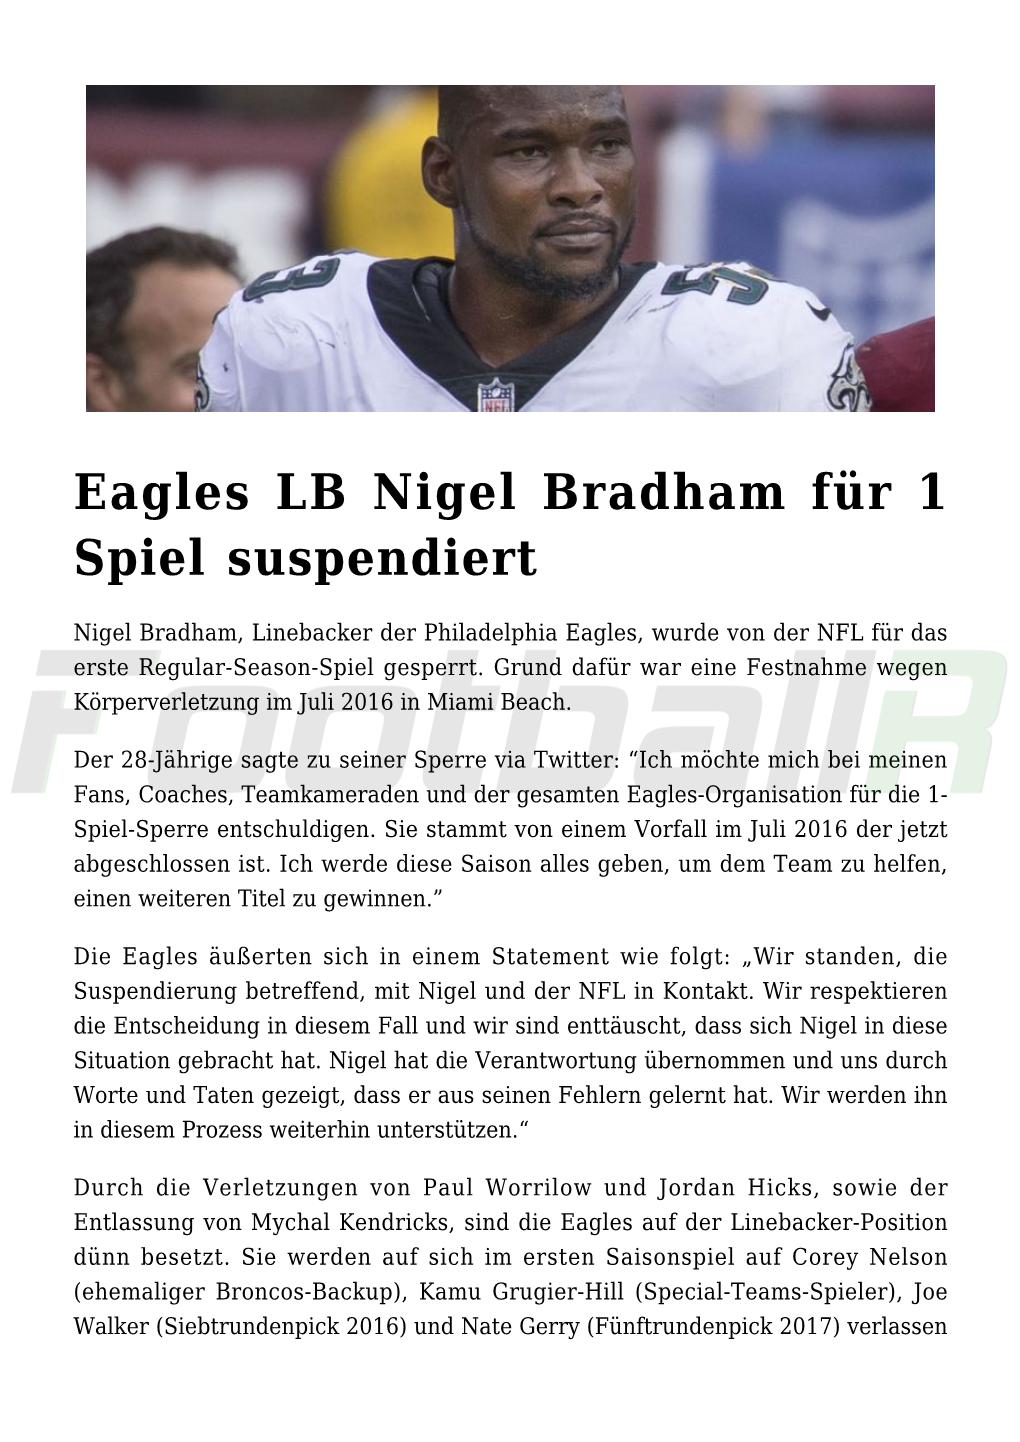 Eagles LB Nigel Bradham Für 1 Spiel Suspendiert